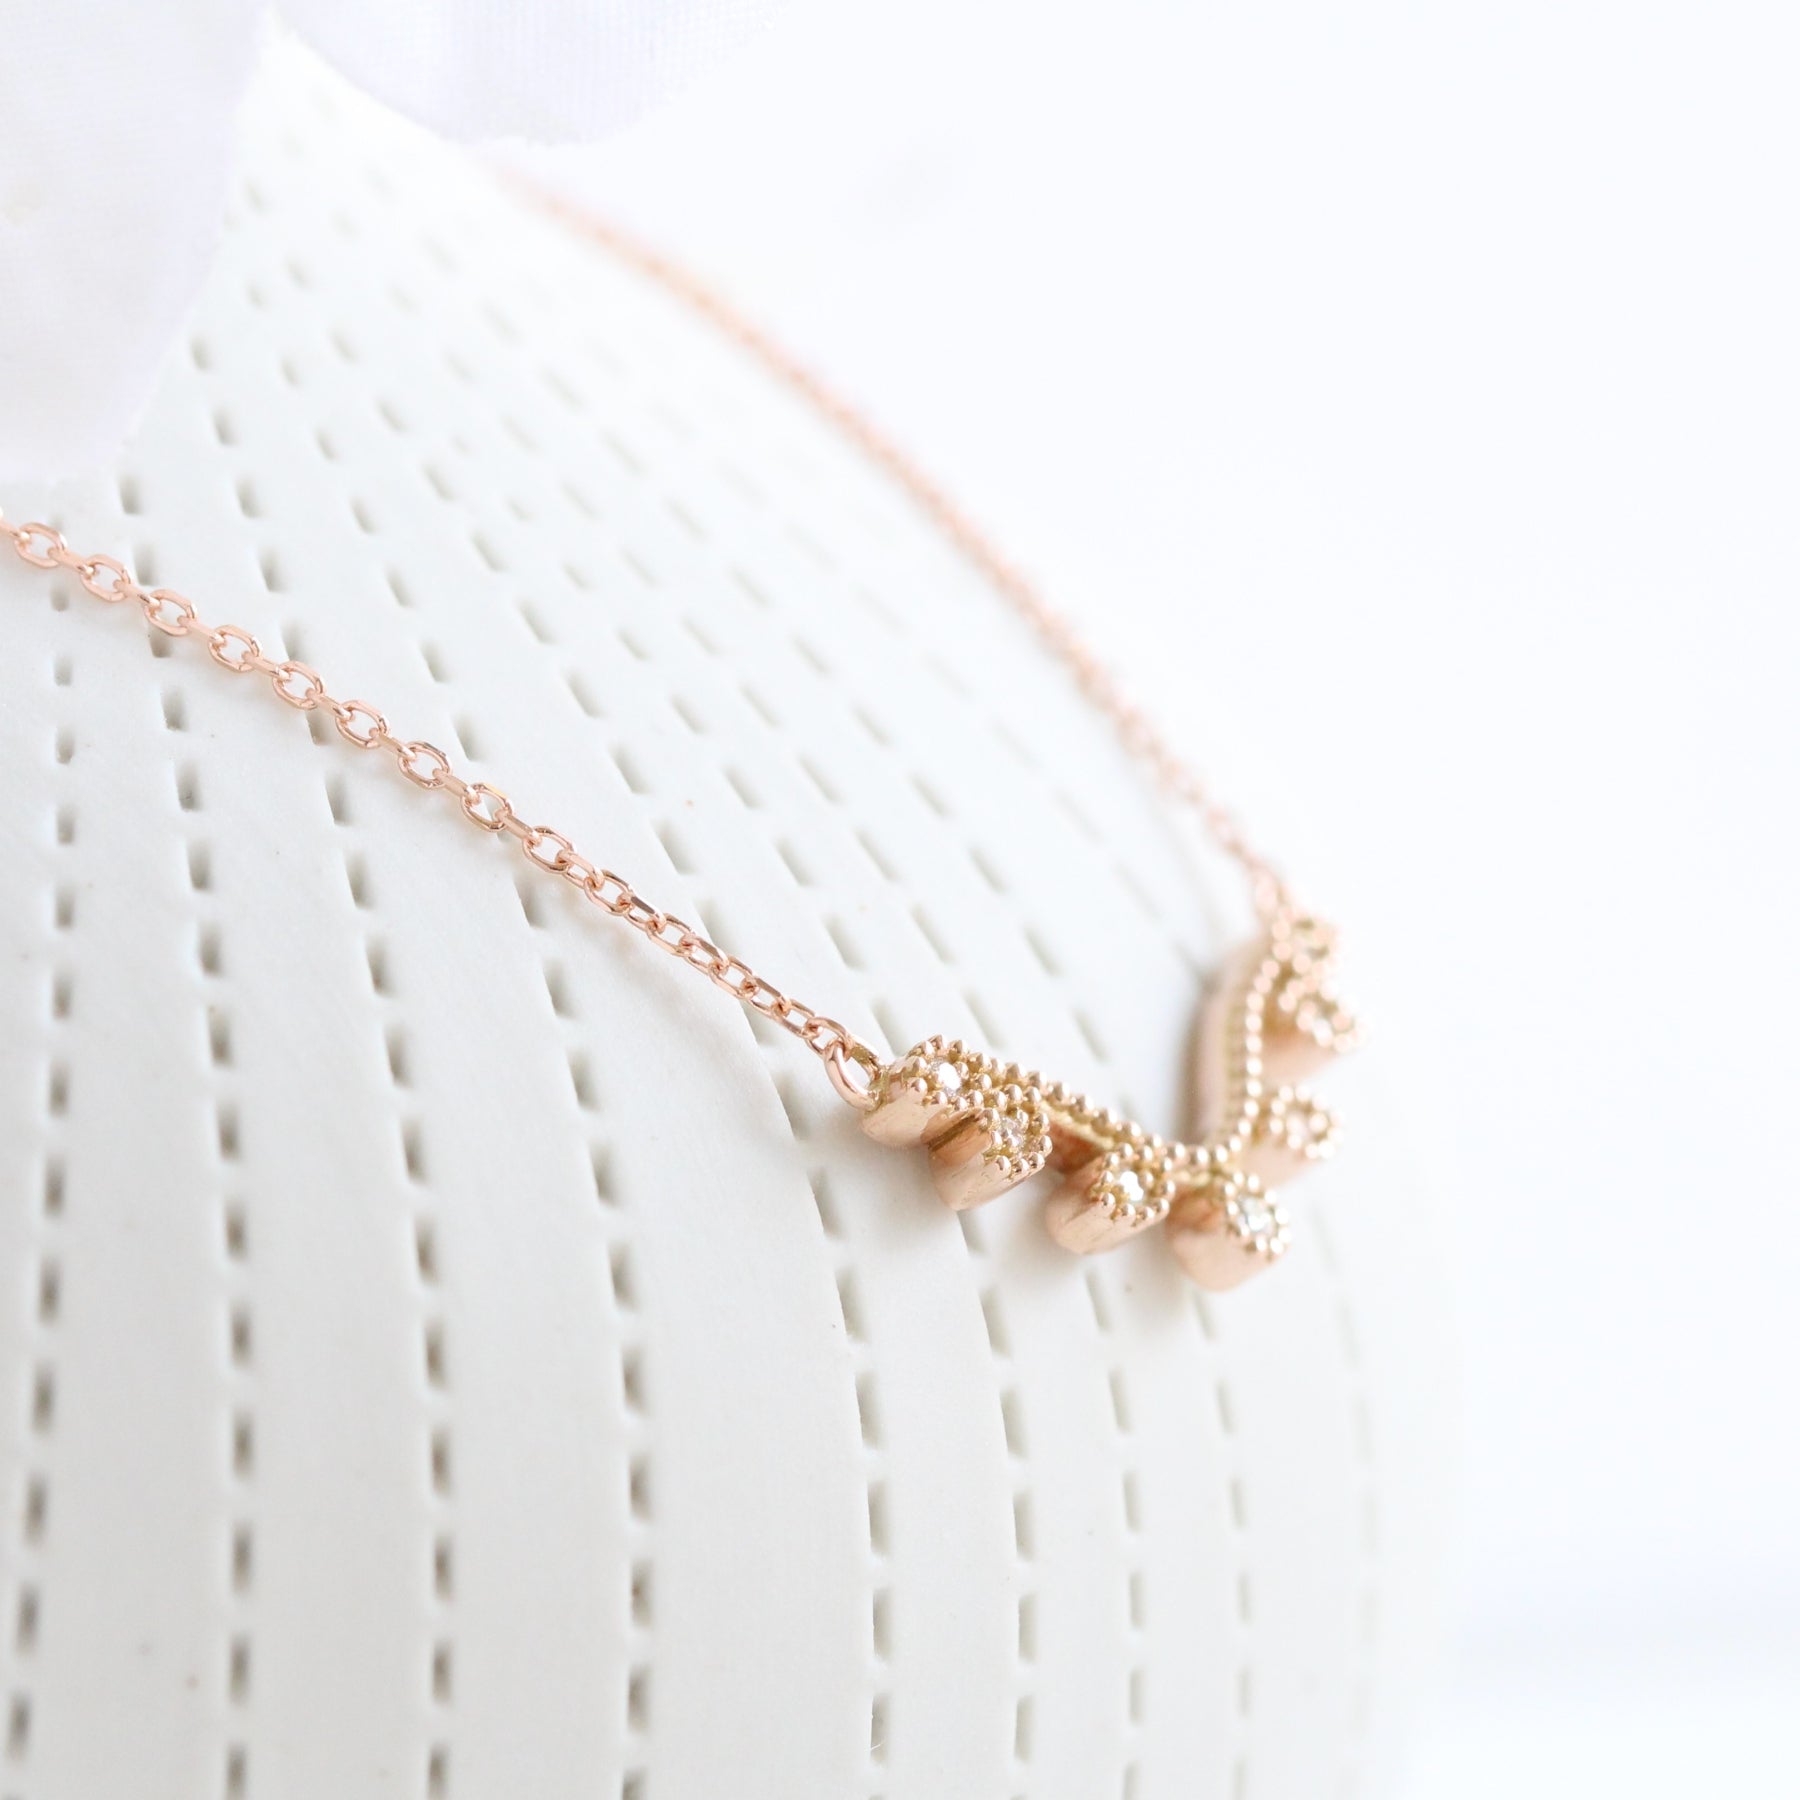 Curved leaf diamond pendant rose gold drop necklace La More Design Jewelry